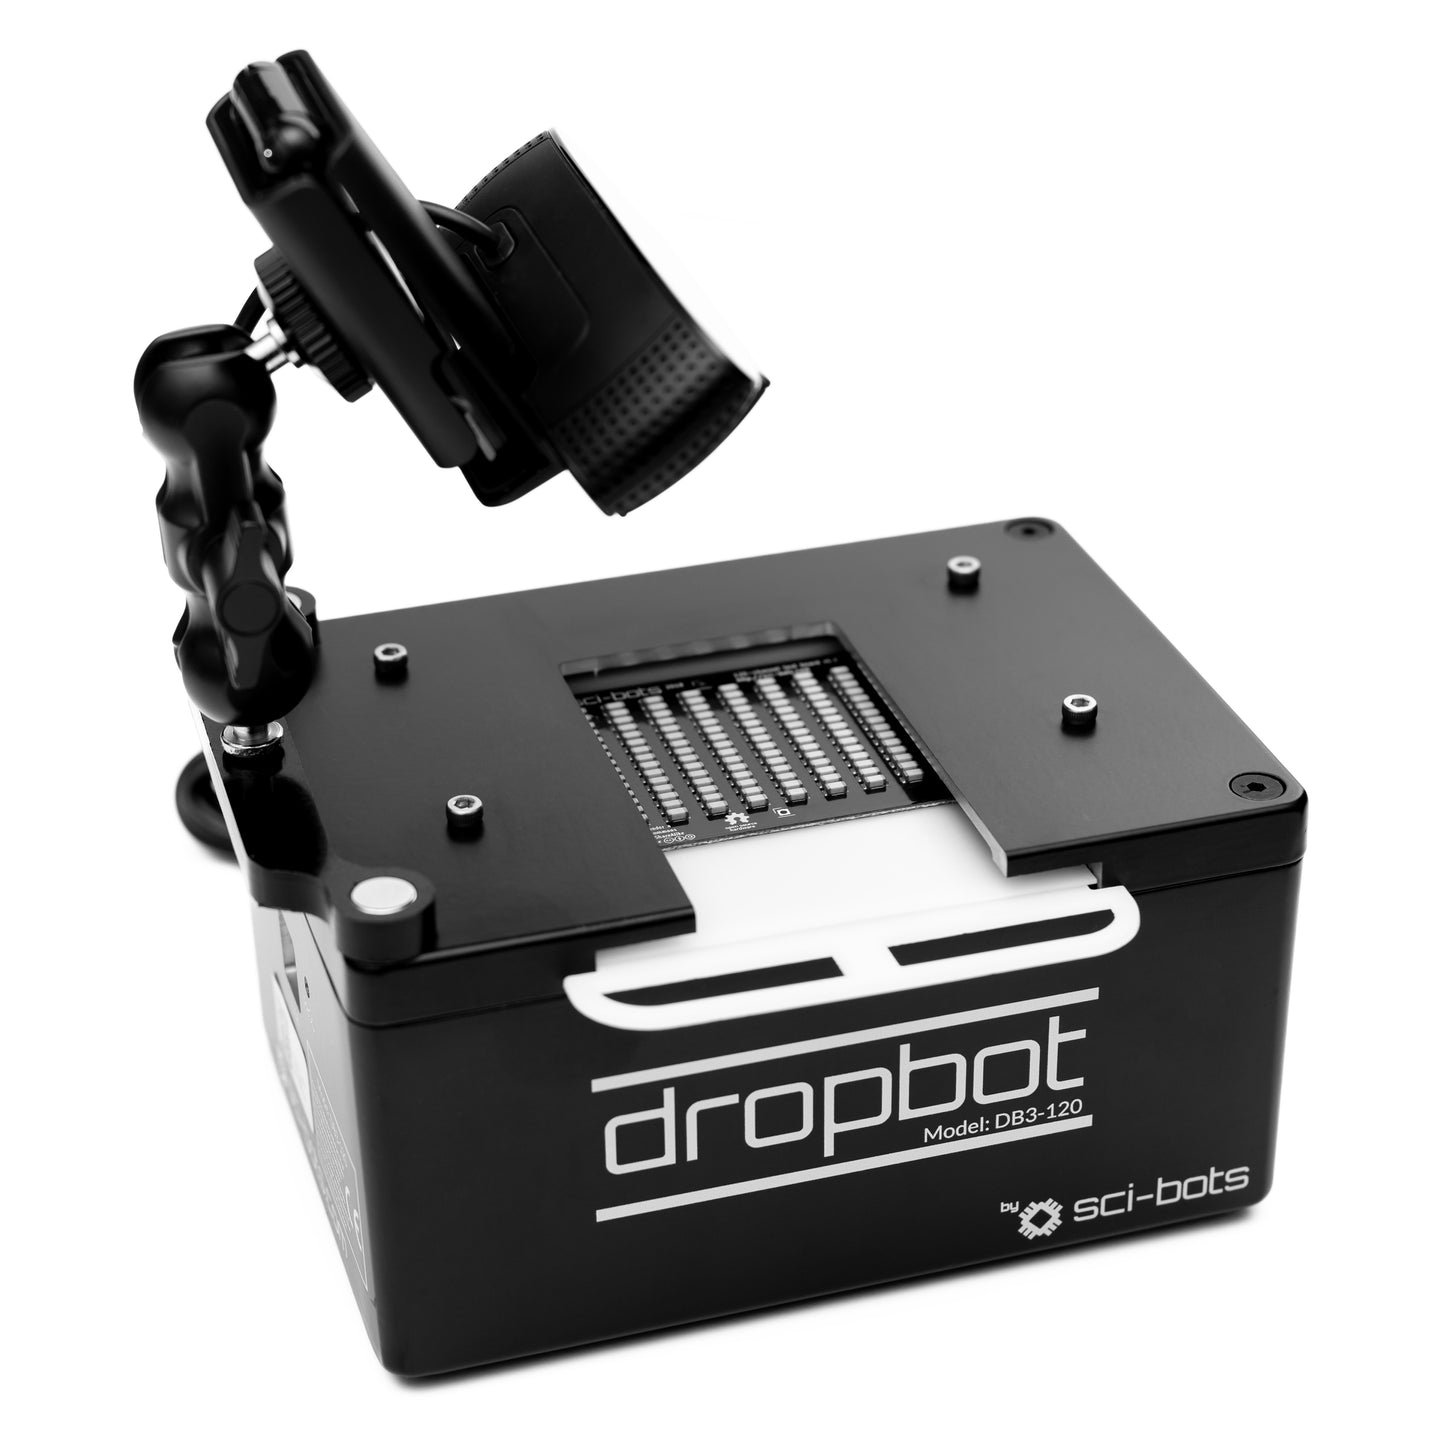 DropBot v3.0 Starter Kit